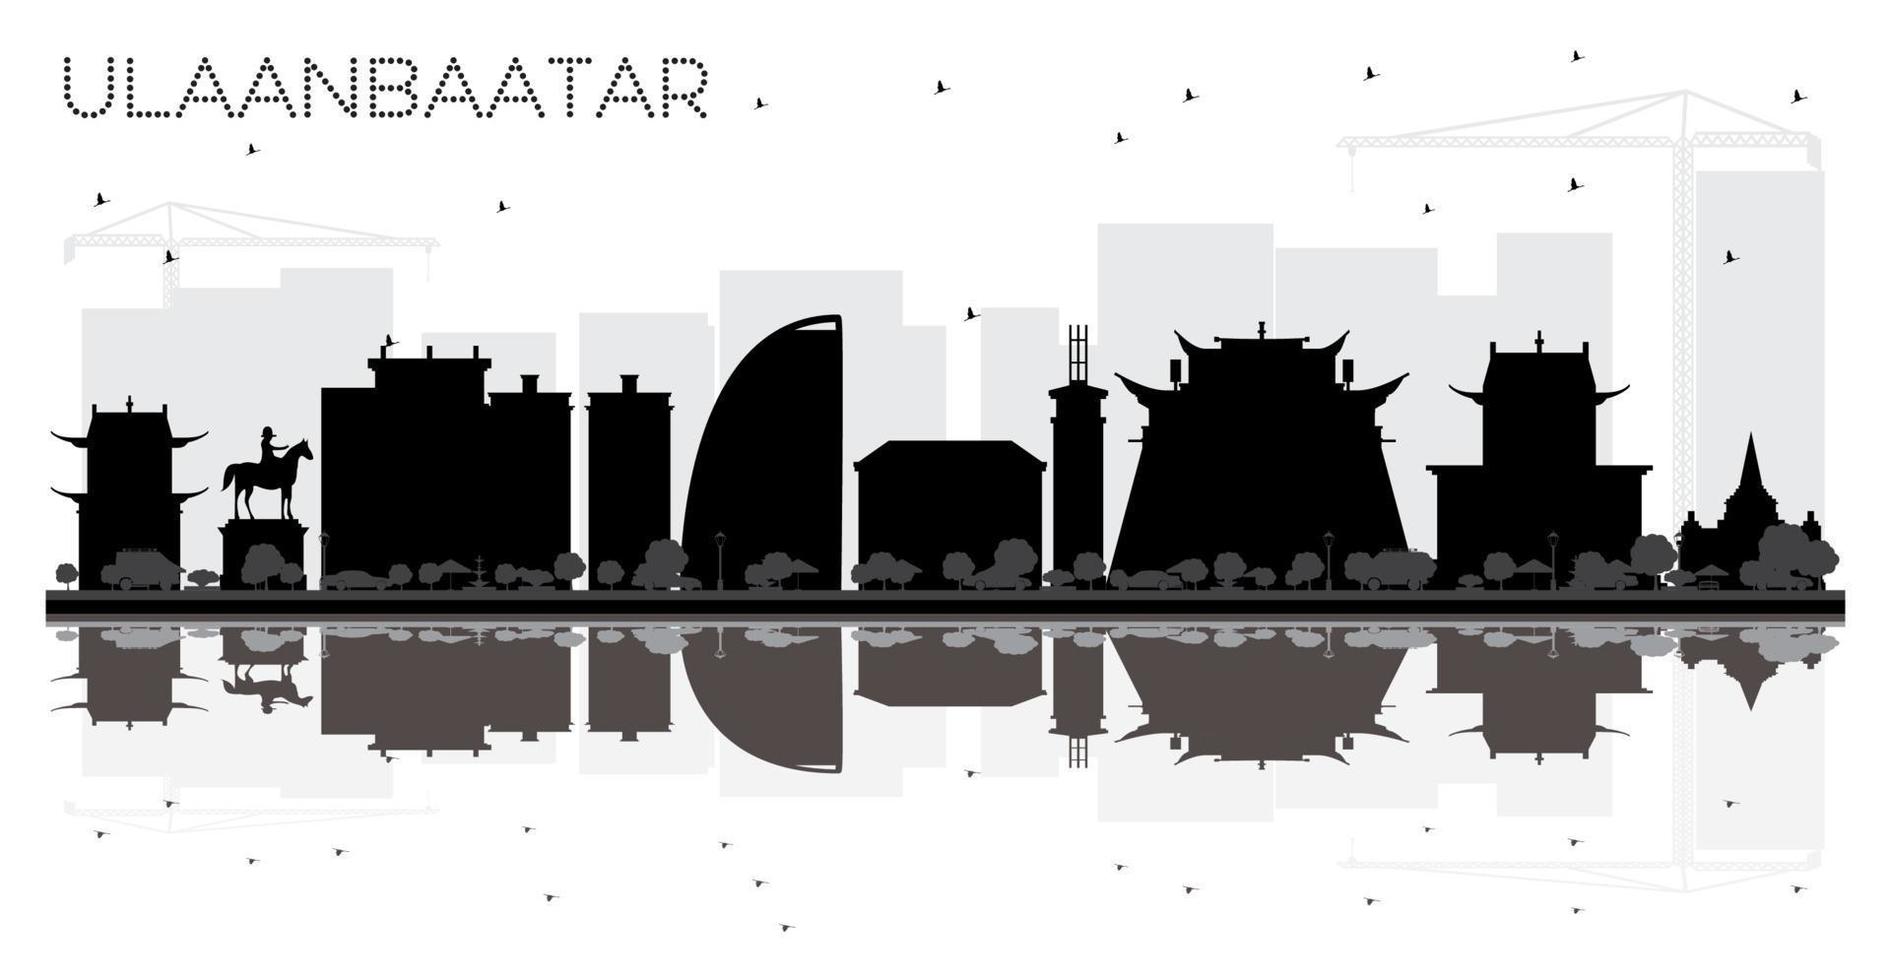 silueta en blanco y negro del horizonte de la ciudad de ulaanbaatar con reflejos. vector